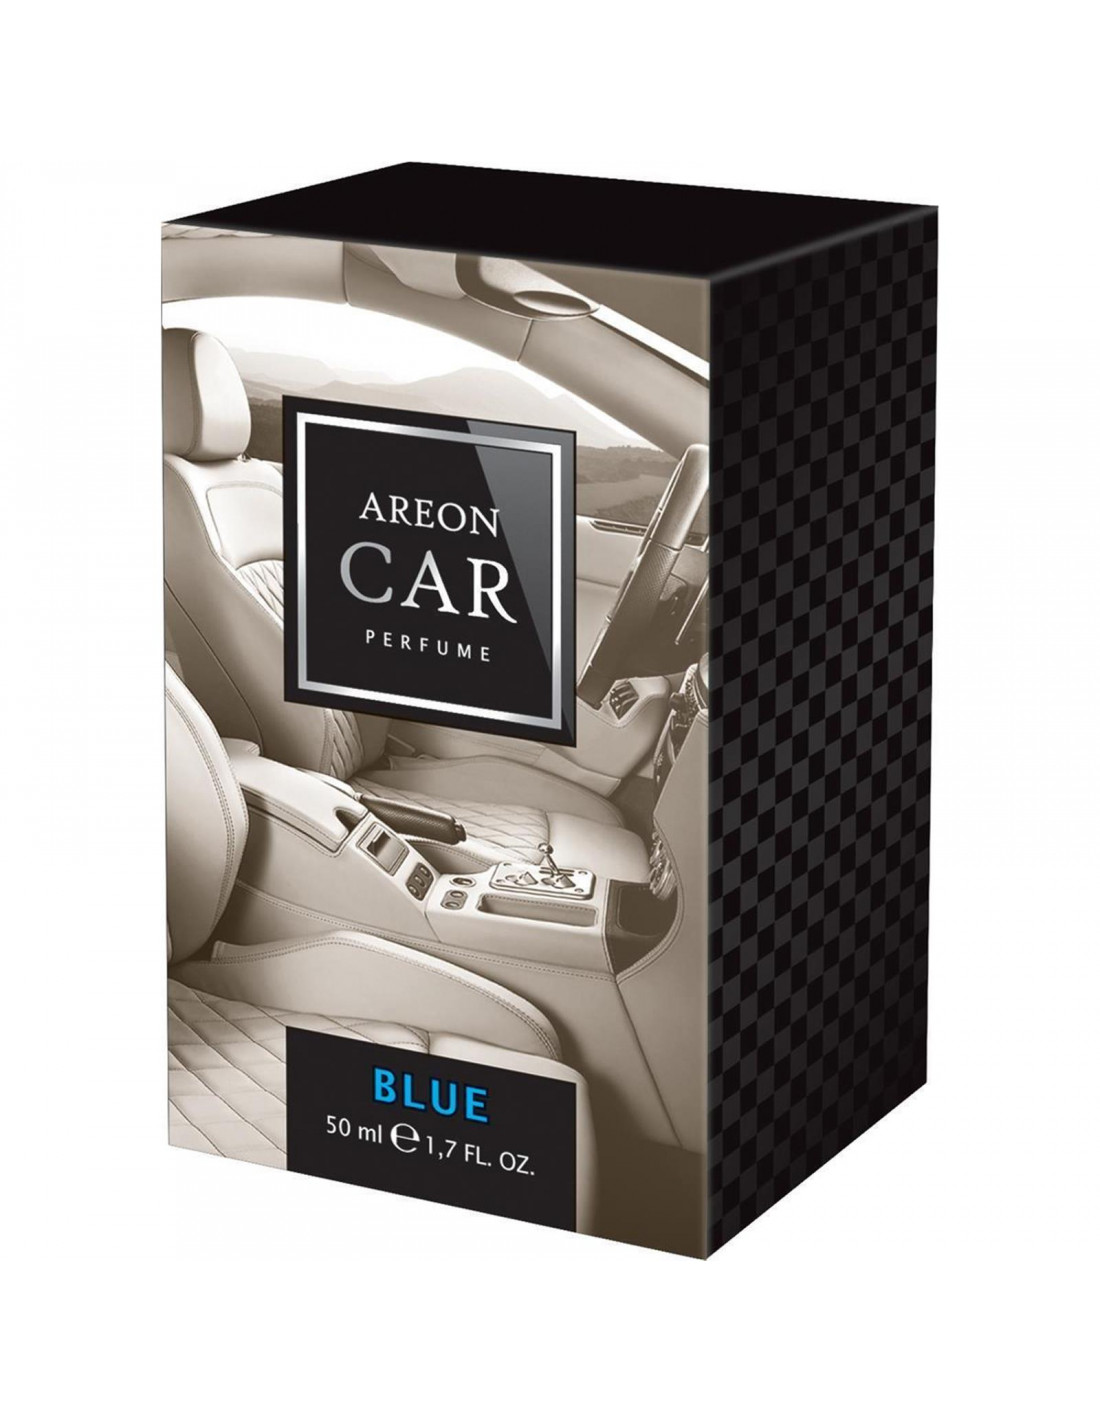 Autoduft Areon LUX CAR Parfüm 50ml. Blau   die premium  Autoduft Parfümerie